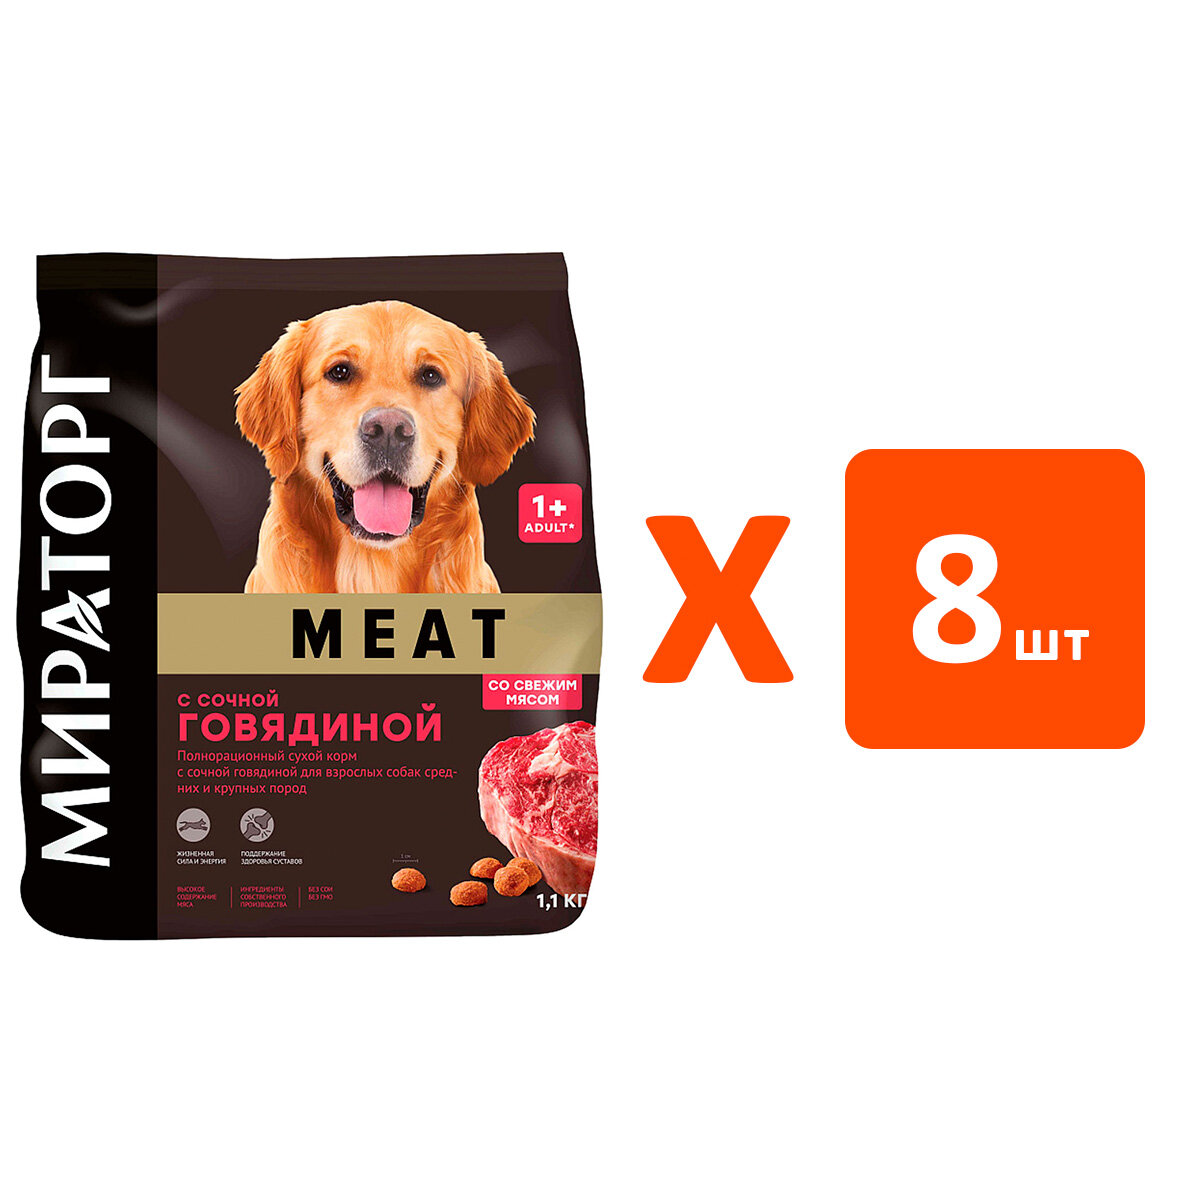 Сухой корм мираторг MEAT для взрослых собак средних и крупных пород с сочной говядиной (1,1 кг х 8 шт)